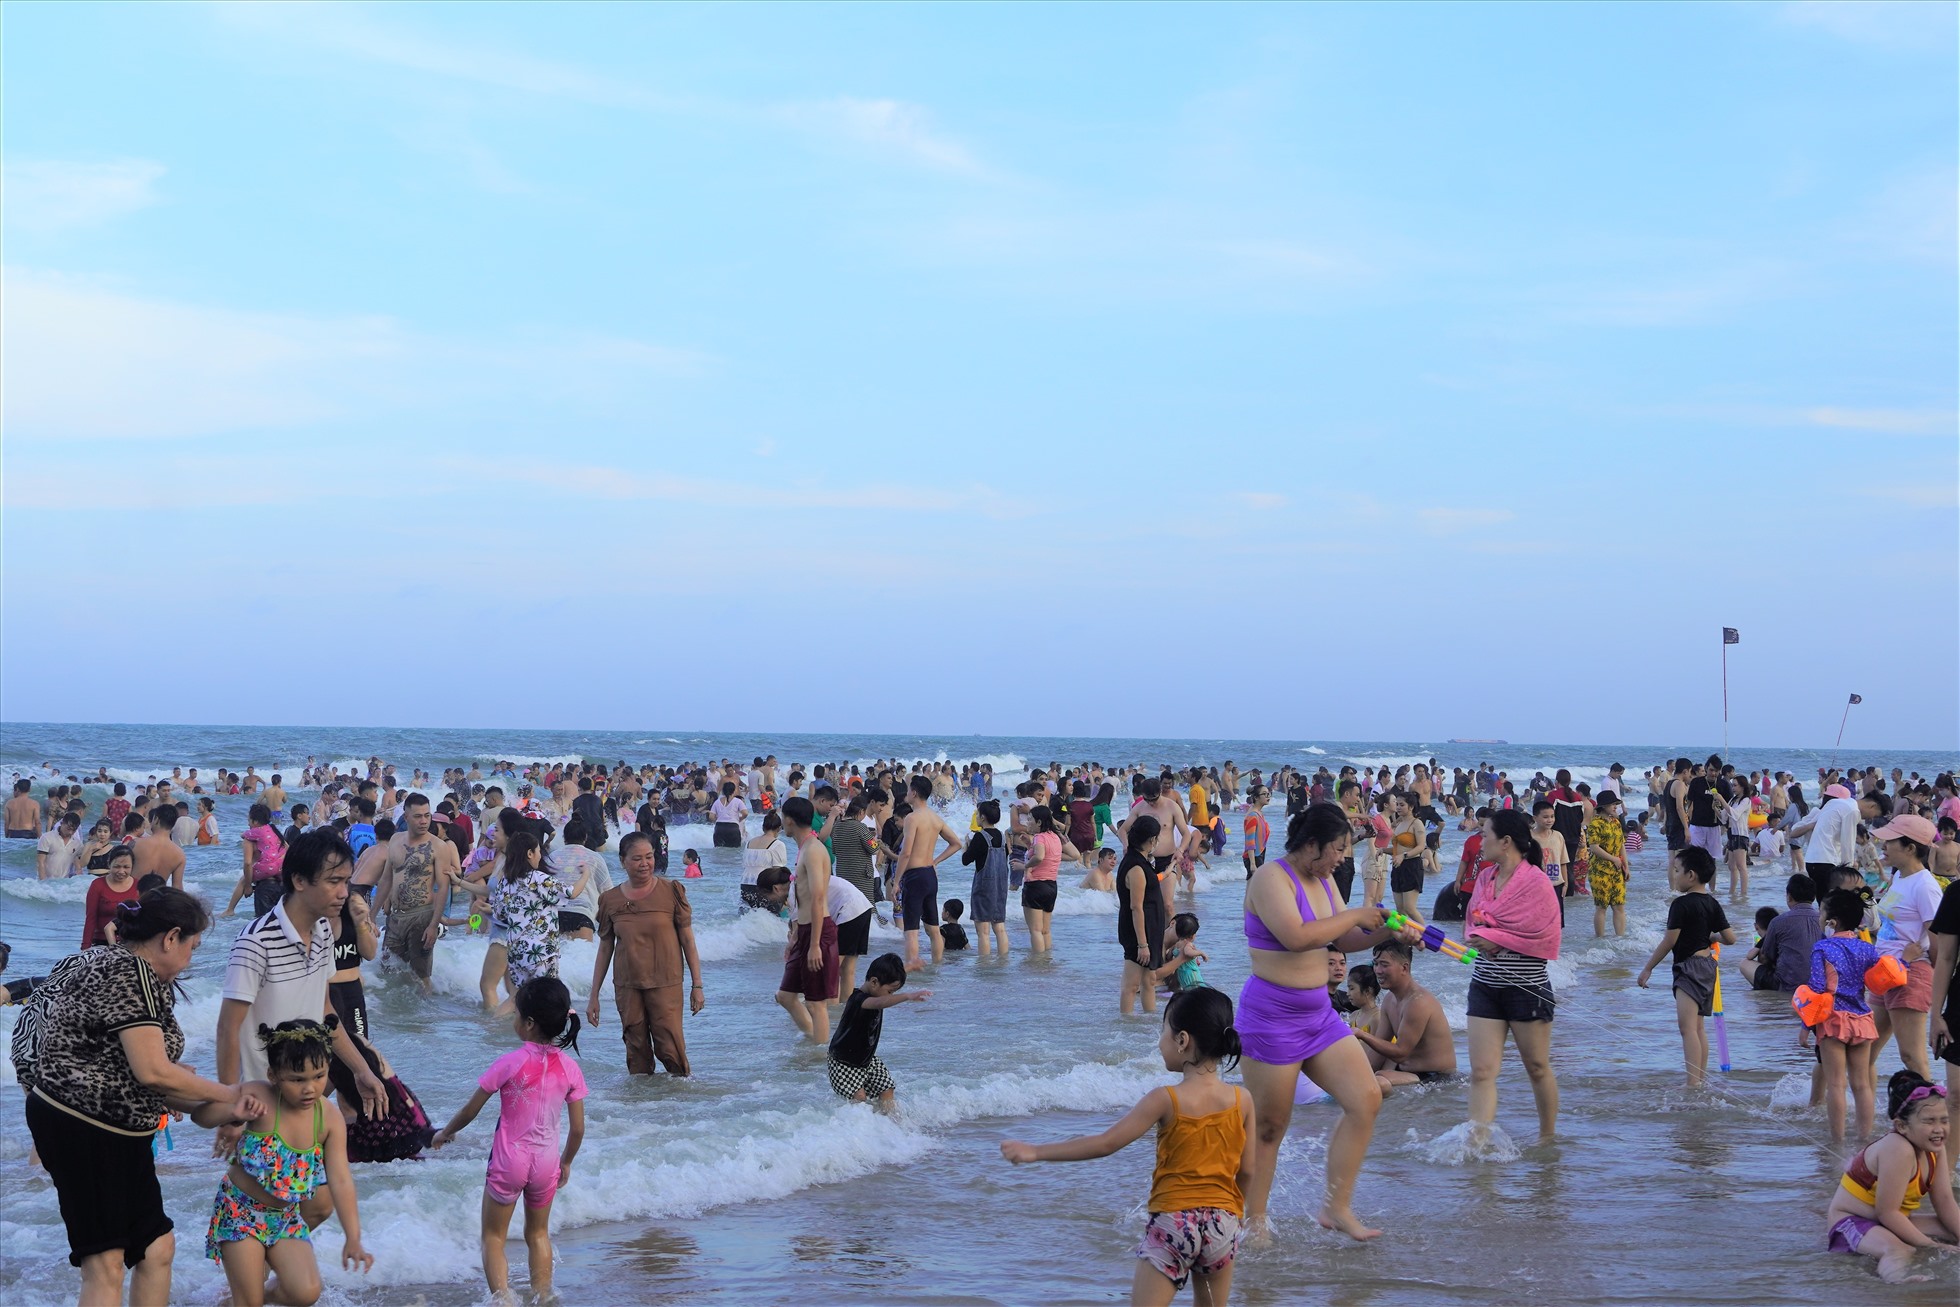 Trời càng về chiều, bãi tắm càng đông khách du lịch. Theo thống kê, trong ngày 30.4, TP Vũng Tàu đón khoảng 85.000 lượt du khách. Trong đó, khoảng 74.000 lượt khách tắm biển nhưng vẫn đảm bảo an toàn. Ảnh: Thành An